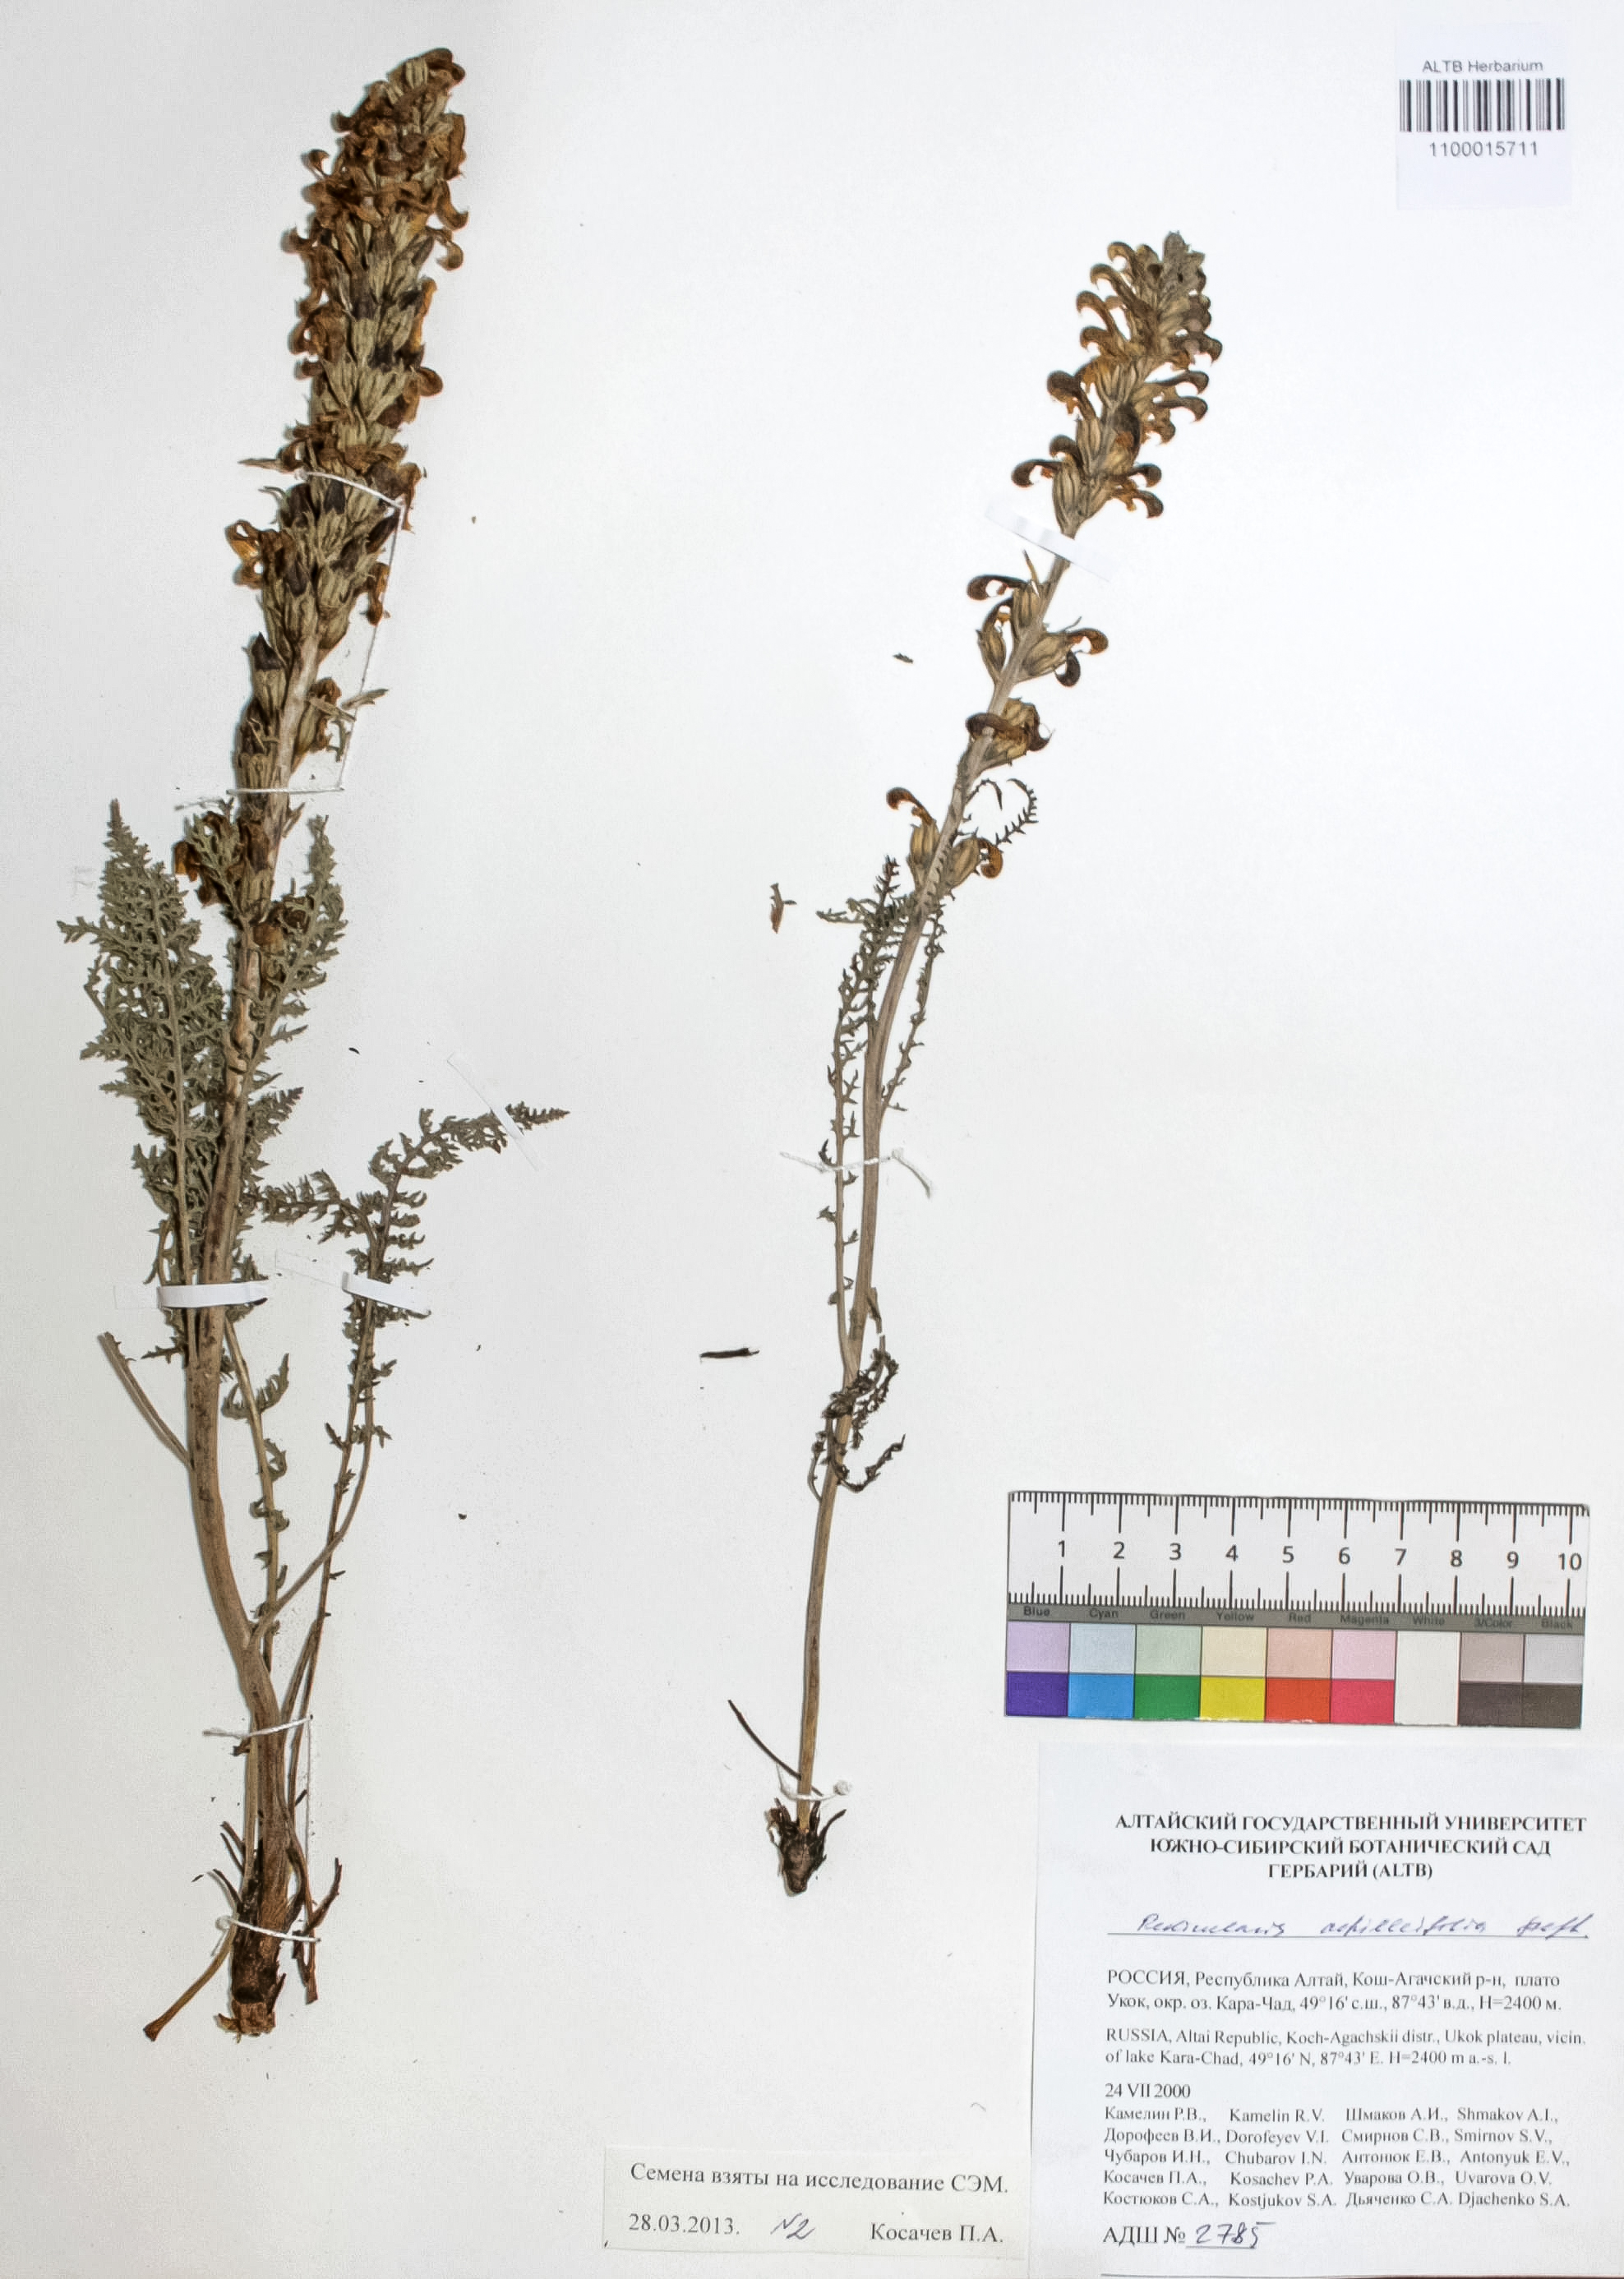 Pedicularis achilleifolia Steph ex. Willd